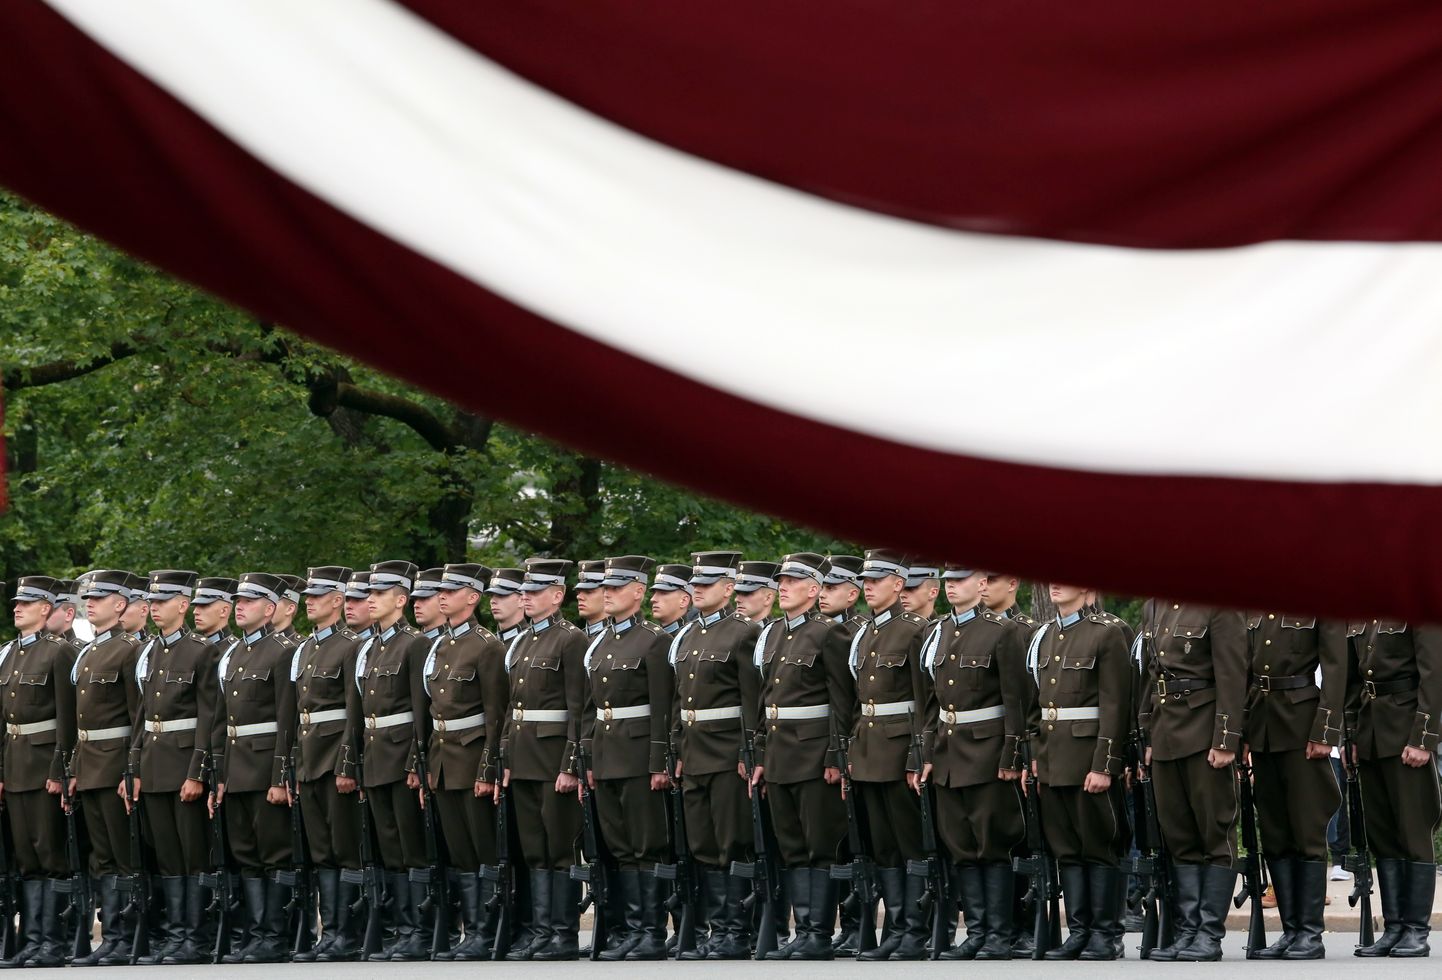 Karavīru godasardze svinīgās ziedu nolikšanas ceremonijas laikā pie Brīvības pieminekļa 2019. gada 14. jūnijā.